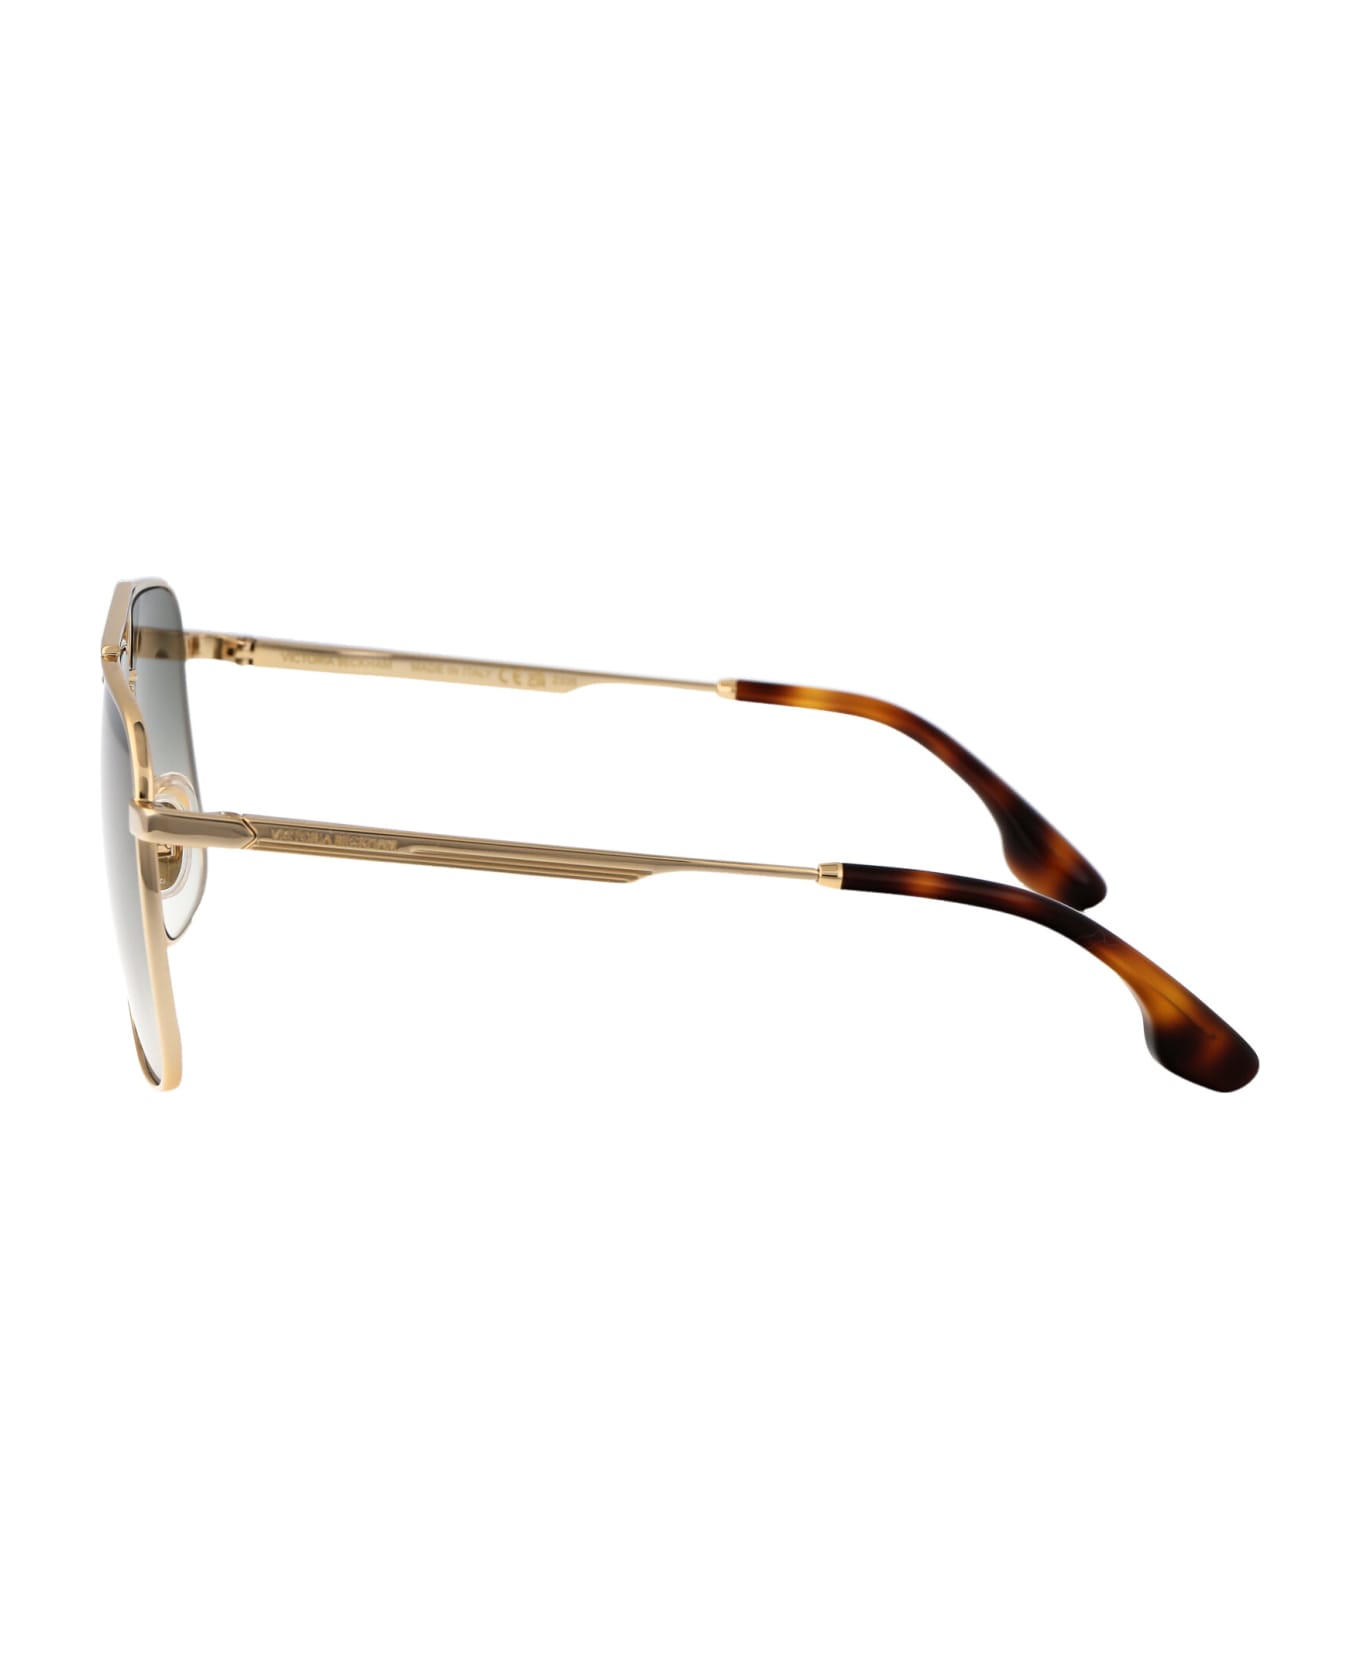 Victoria Beckham Vb240s Sunglasses - 700 GOLD/KHAKI